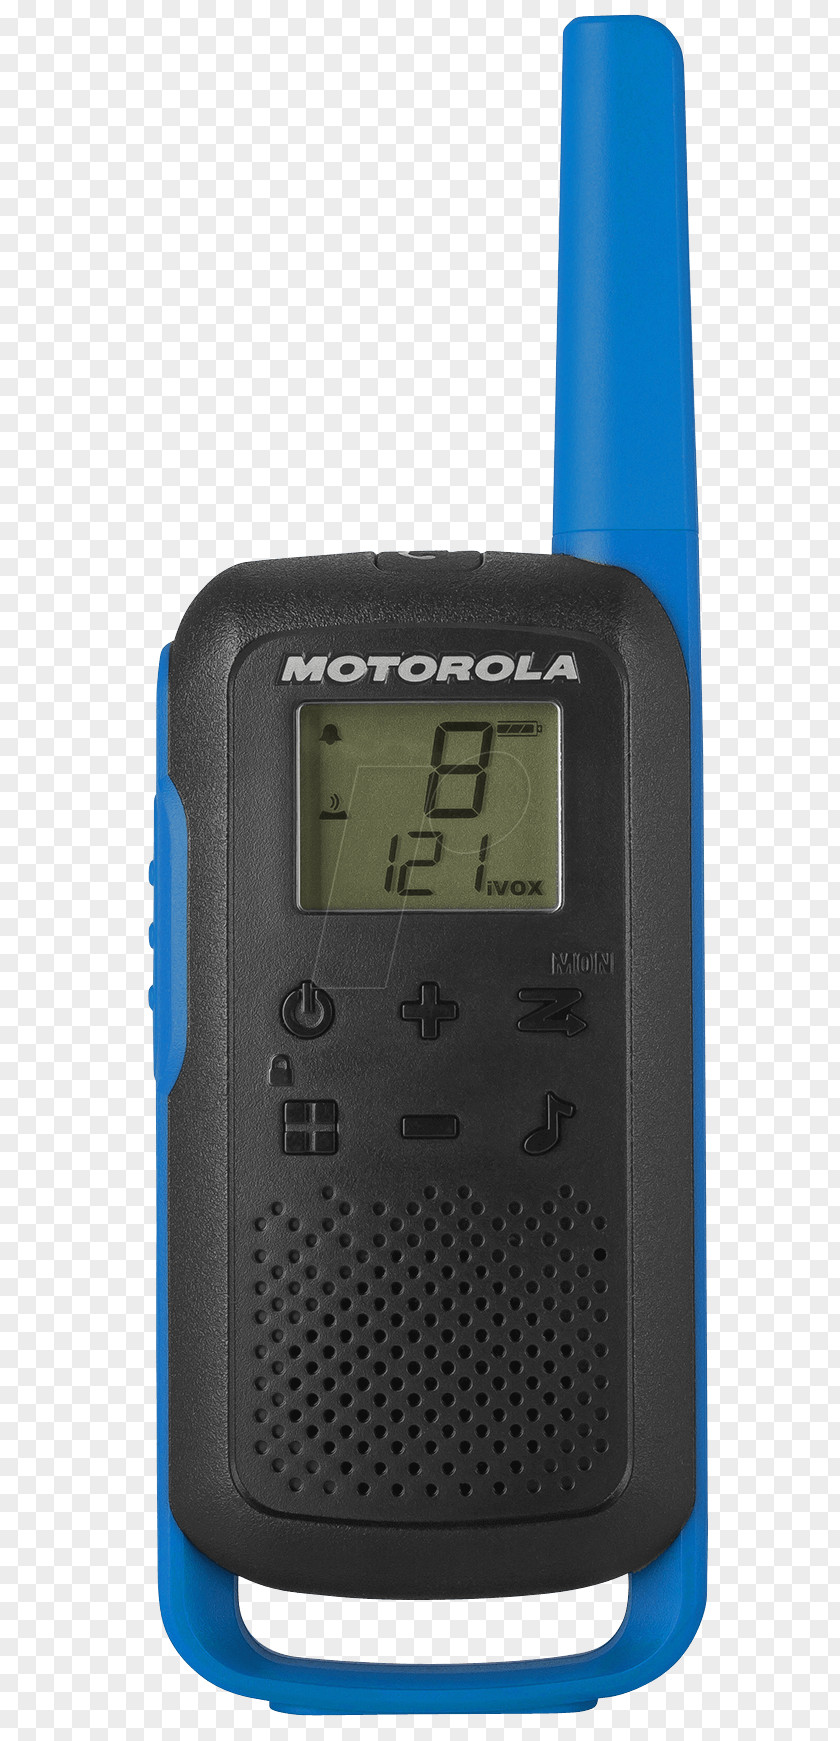 Motorola Startac Handheld Two-Way Radios TALKABOUT T62 Hardware/Electronic PMR446 TLKR Walkie Talkie PNG